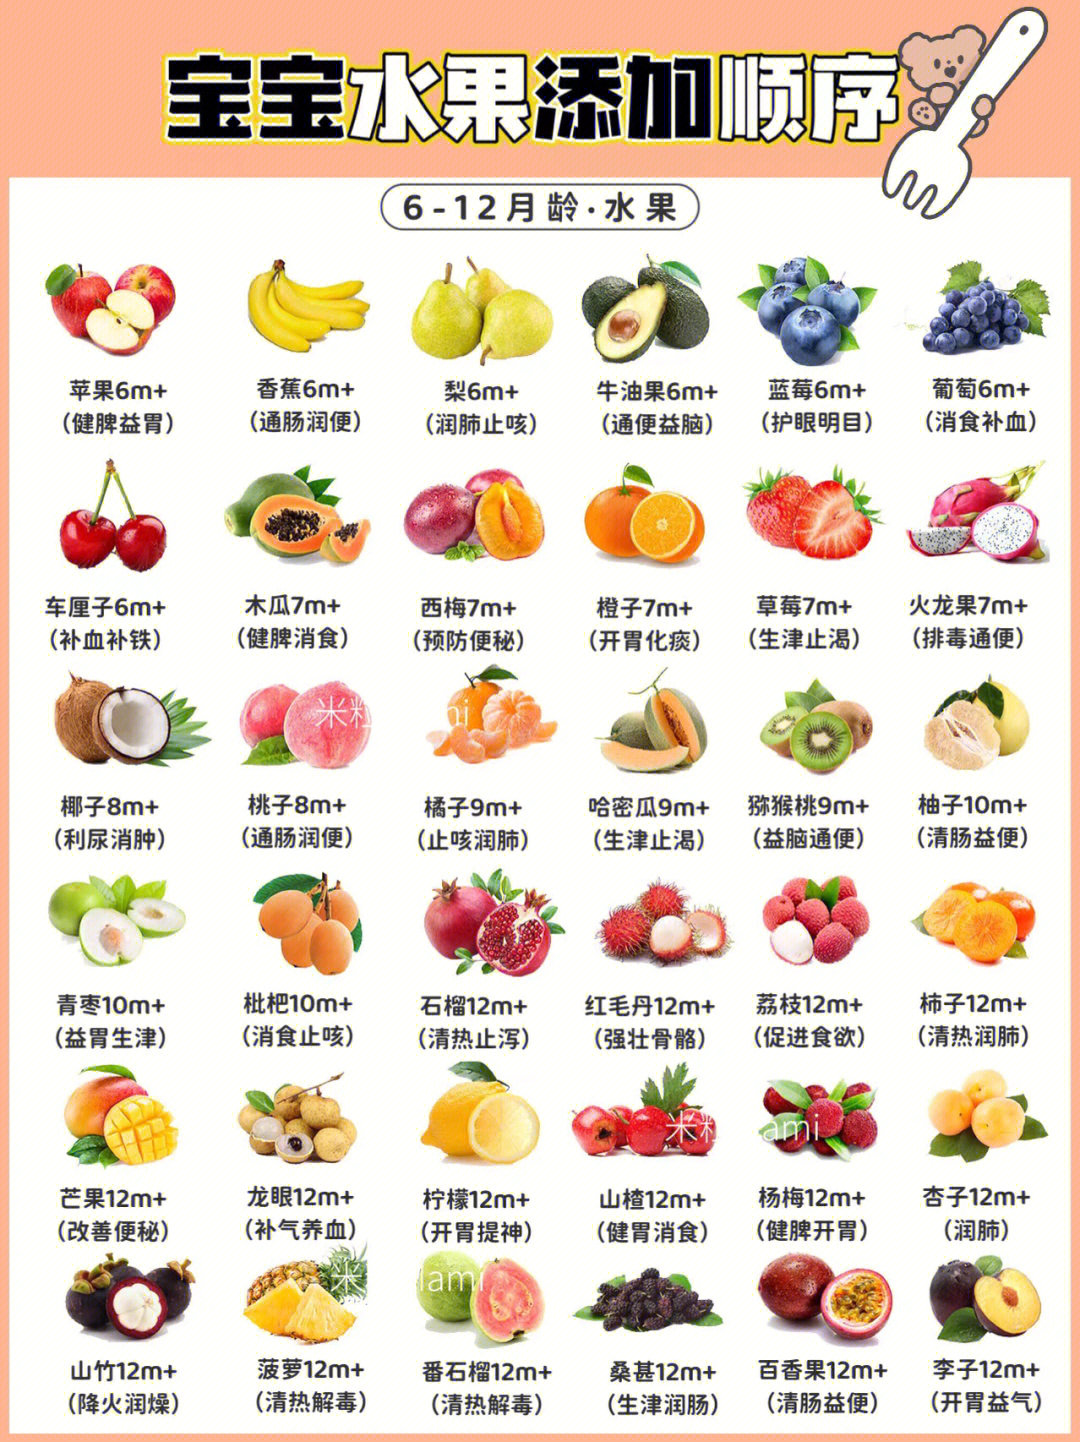 水果名字品种图片